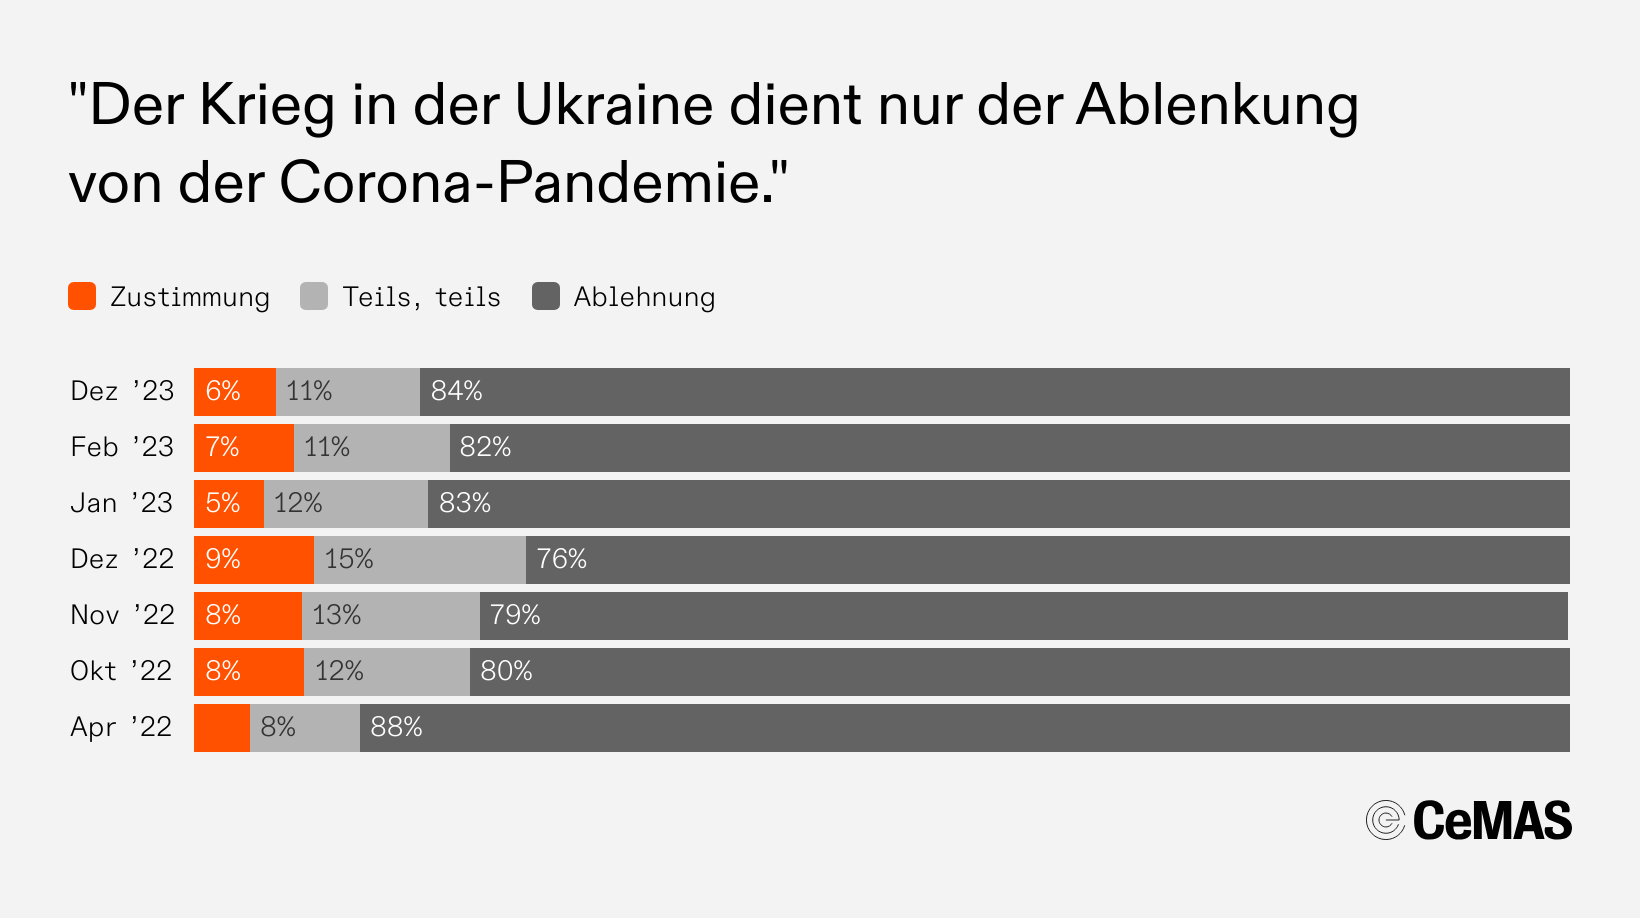 Zustimmungswerte zur Aussage „Der Krieg in der Ukraine dient nur der Ablenkung von der Corona-Pandemie“:
  Dez 23: Zustimmung 6 %, Teils teils 11 %, Ablehnung 84 %
  Feb 23: Zustimmung 7 %, Teils teils 11 %, Ablehnung 82 %
  Jan 23: Zustimmung 5 %, Teils teils 12 %, Ablehnung 83 %
  Dez 22: Zustimmung 9 %, Teils teils 15 %, Ablehnung 76 %
  Nov 22: Zustimmung 8 %, Teils teils 13 %, Ablehnung 79 %
  Okt 22: Zustimmung 8 %, Teils teils 12 %, Ablehnung 80 %
  Apr 22: Zustimmung - %, Teils teils  8 %, Ablehnung 88 %